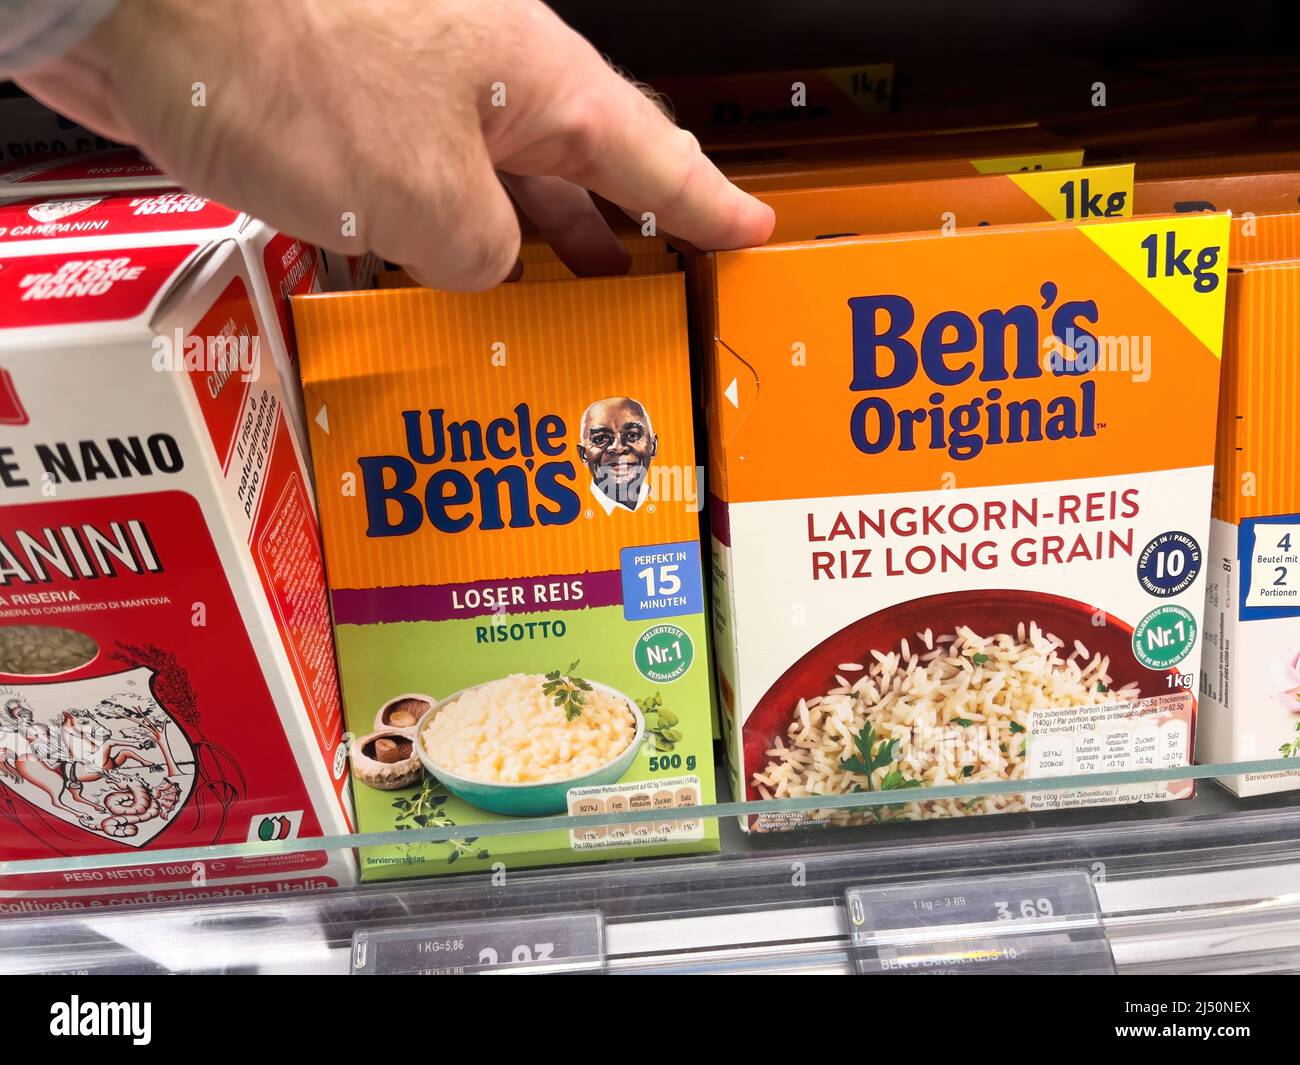 Un paquet de riz Basmati Uncle Ben's sur fond blanc Photo Stock - Alamy